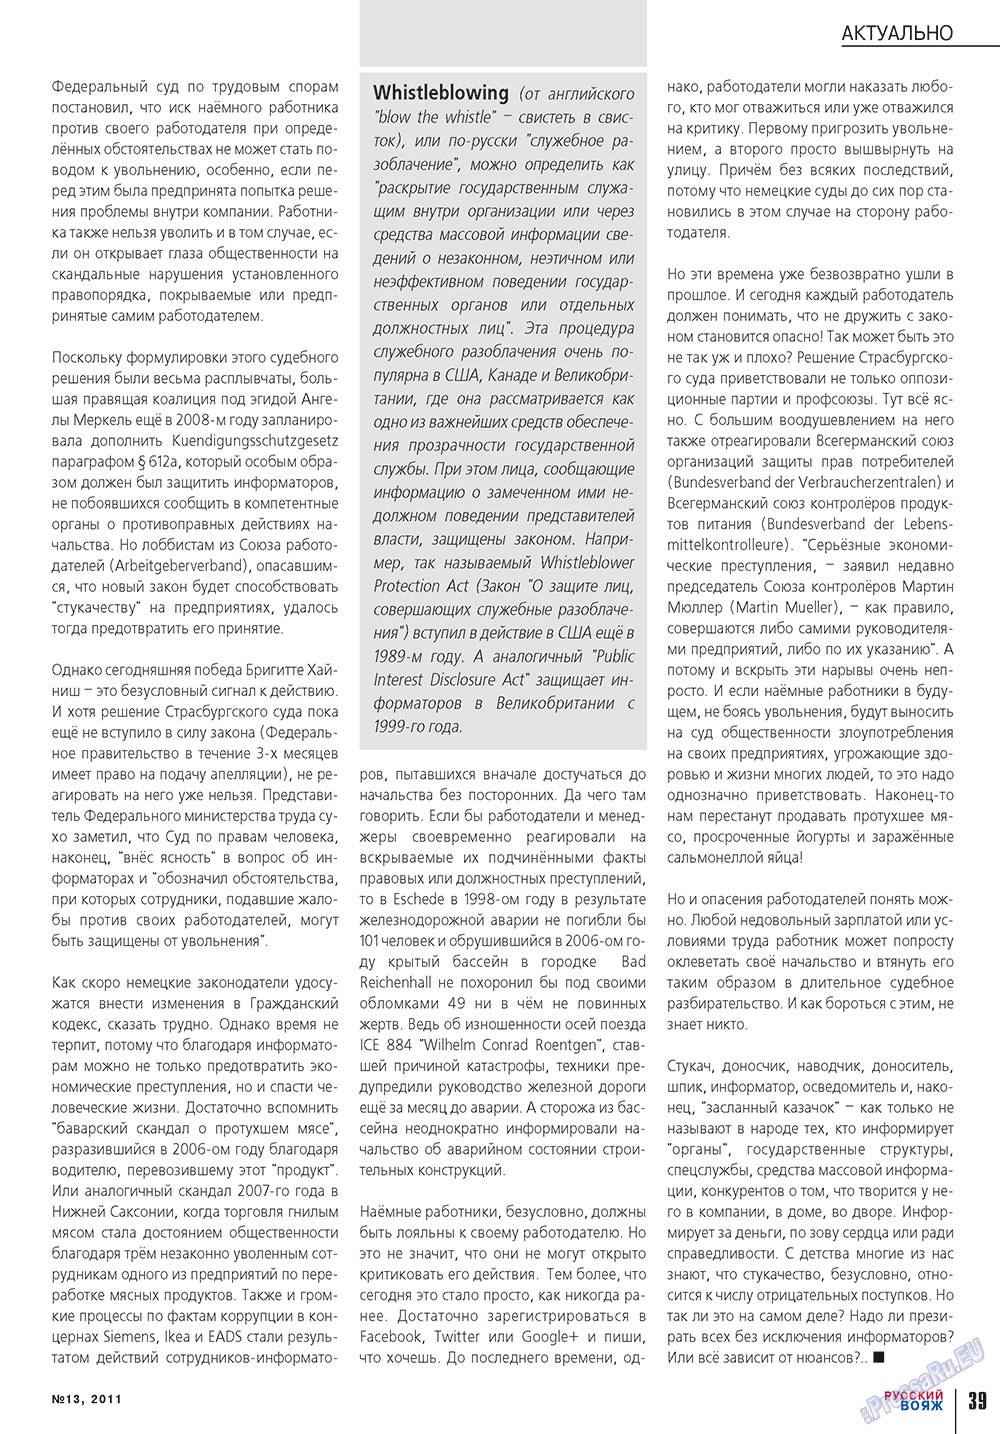 Русский вояж, журнал. 2011 №13 стр.39